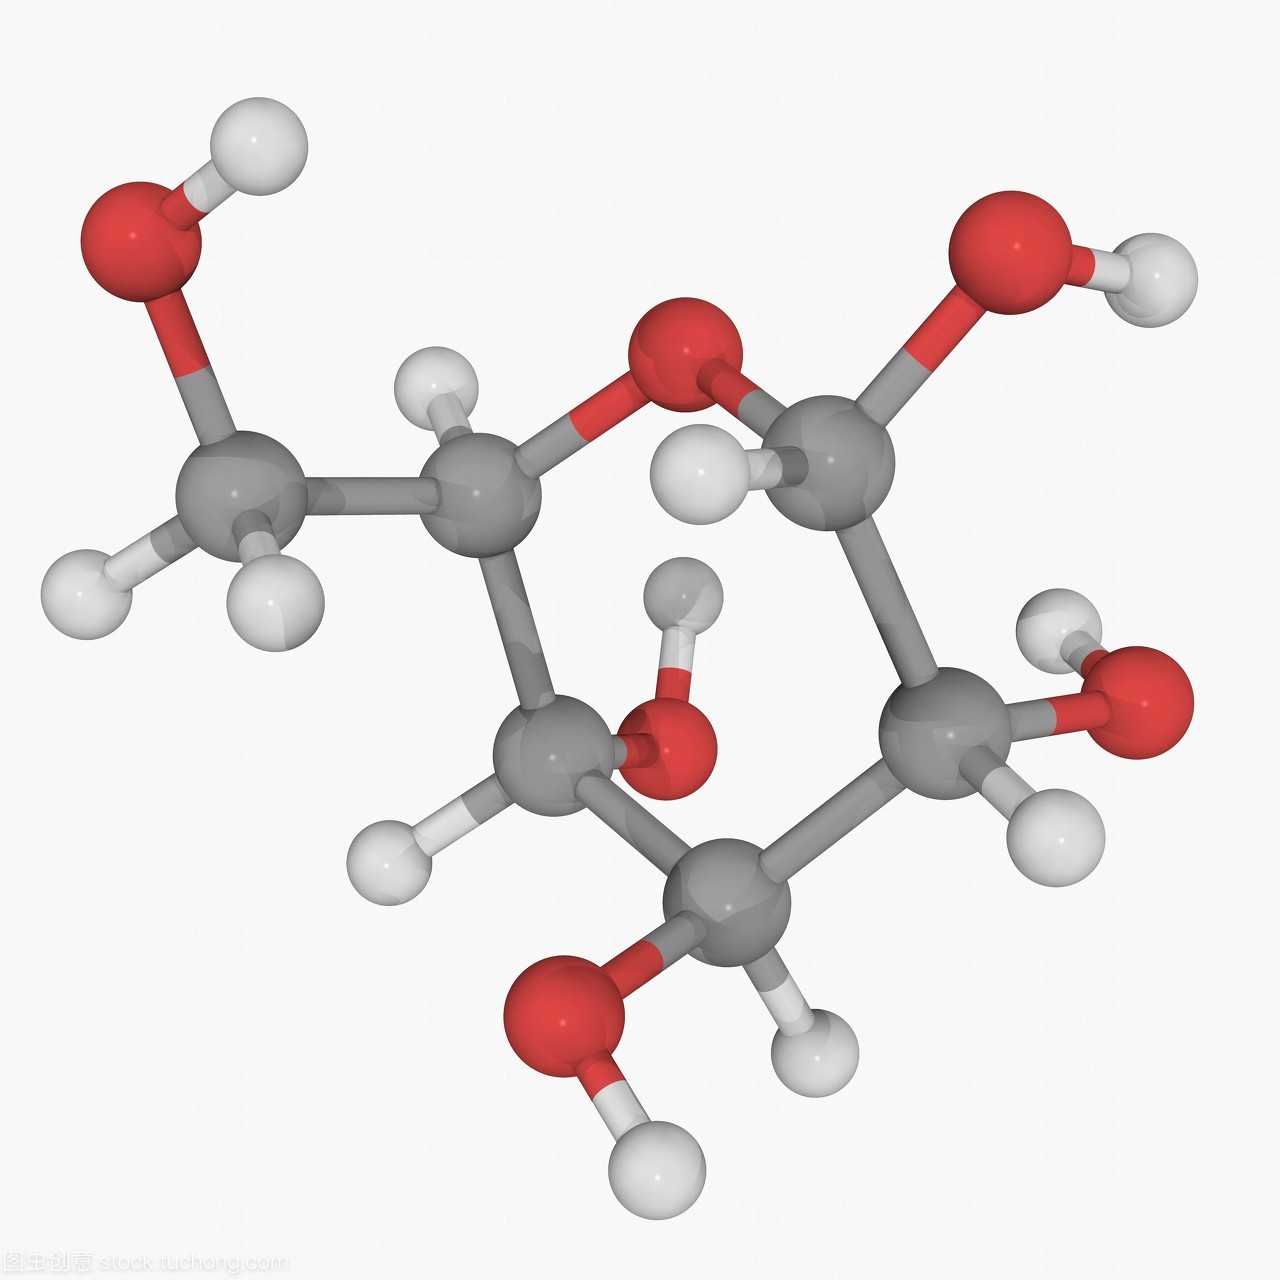 盐酸伊达比星,Idarubicin hydrochloride